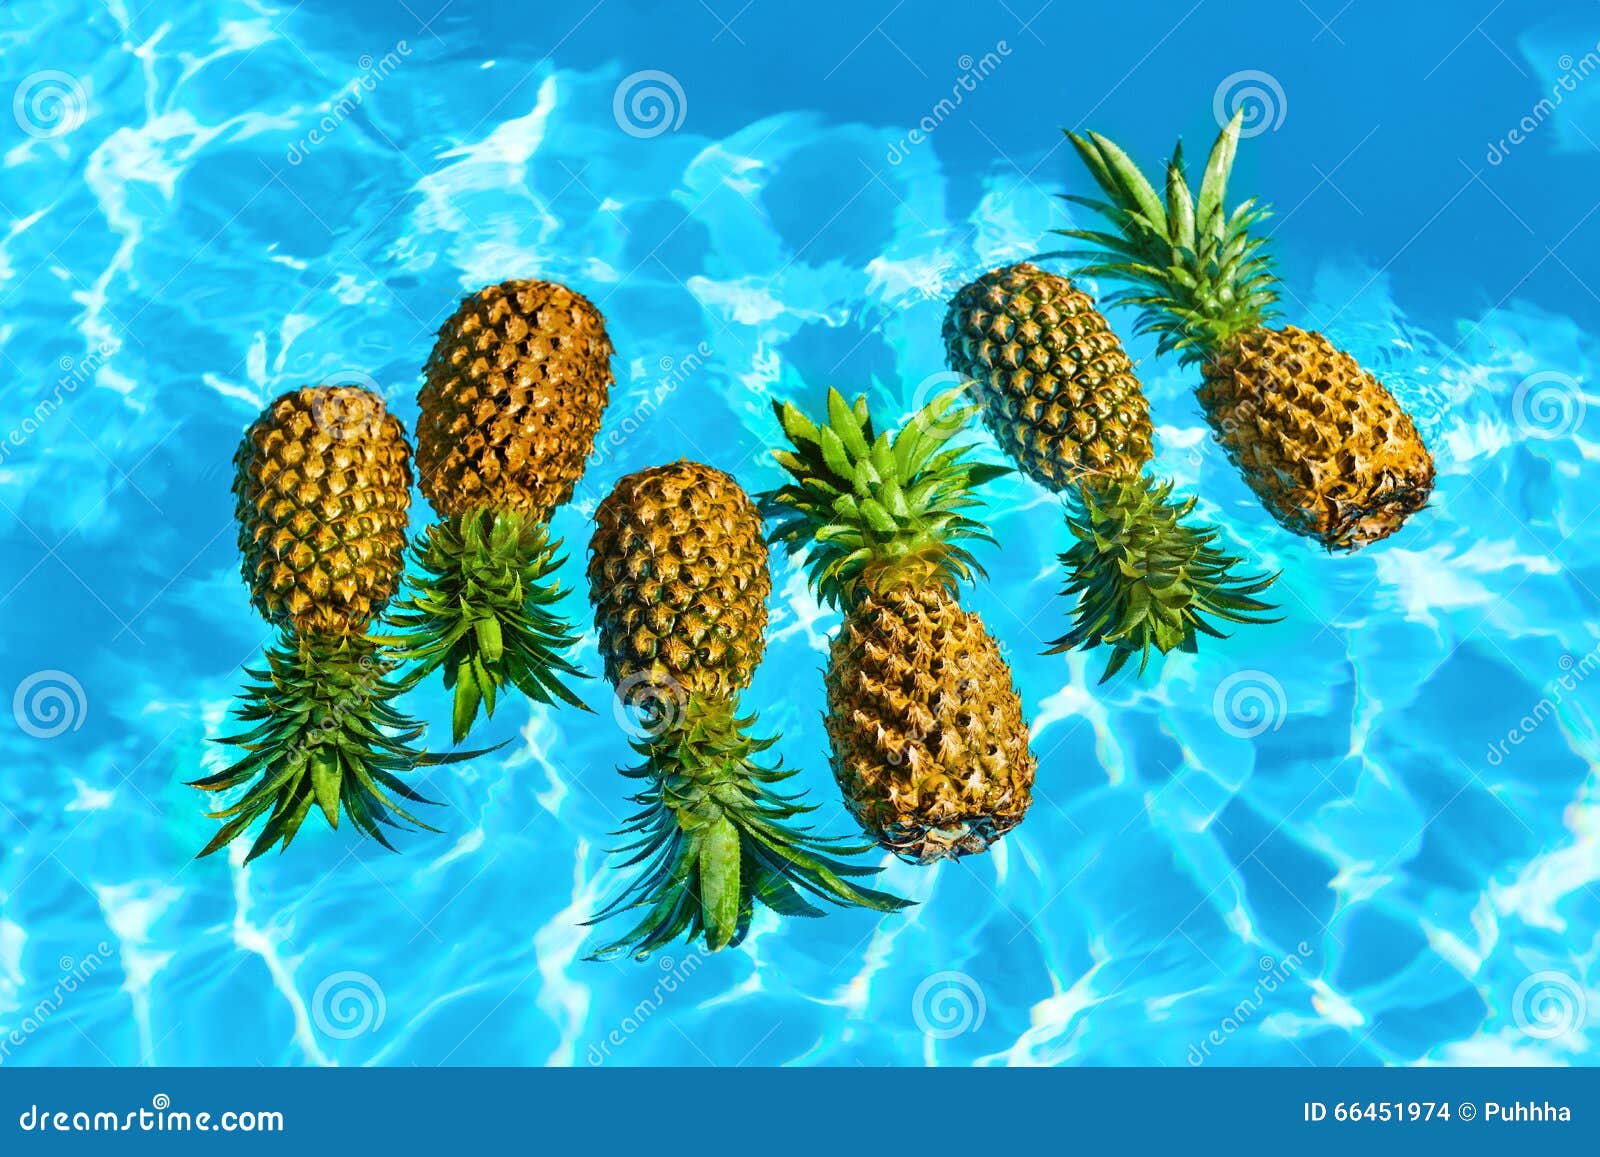 pineapple tumblr wallpapers Organische Ananas Frische Nahrung Im Gesunde Wasser